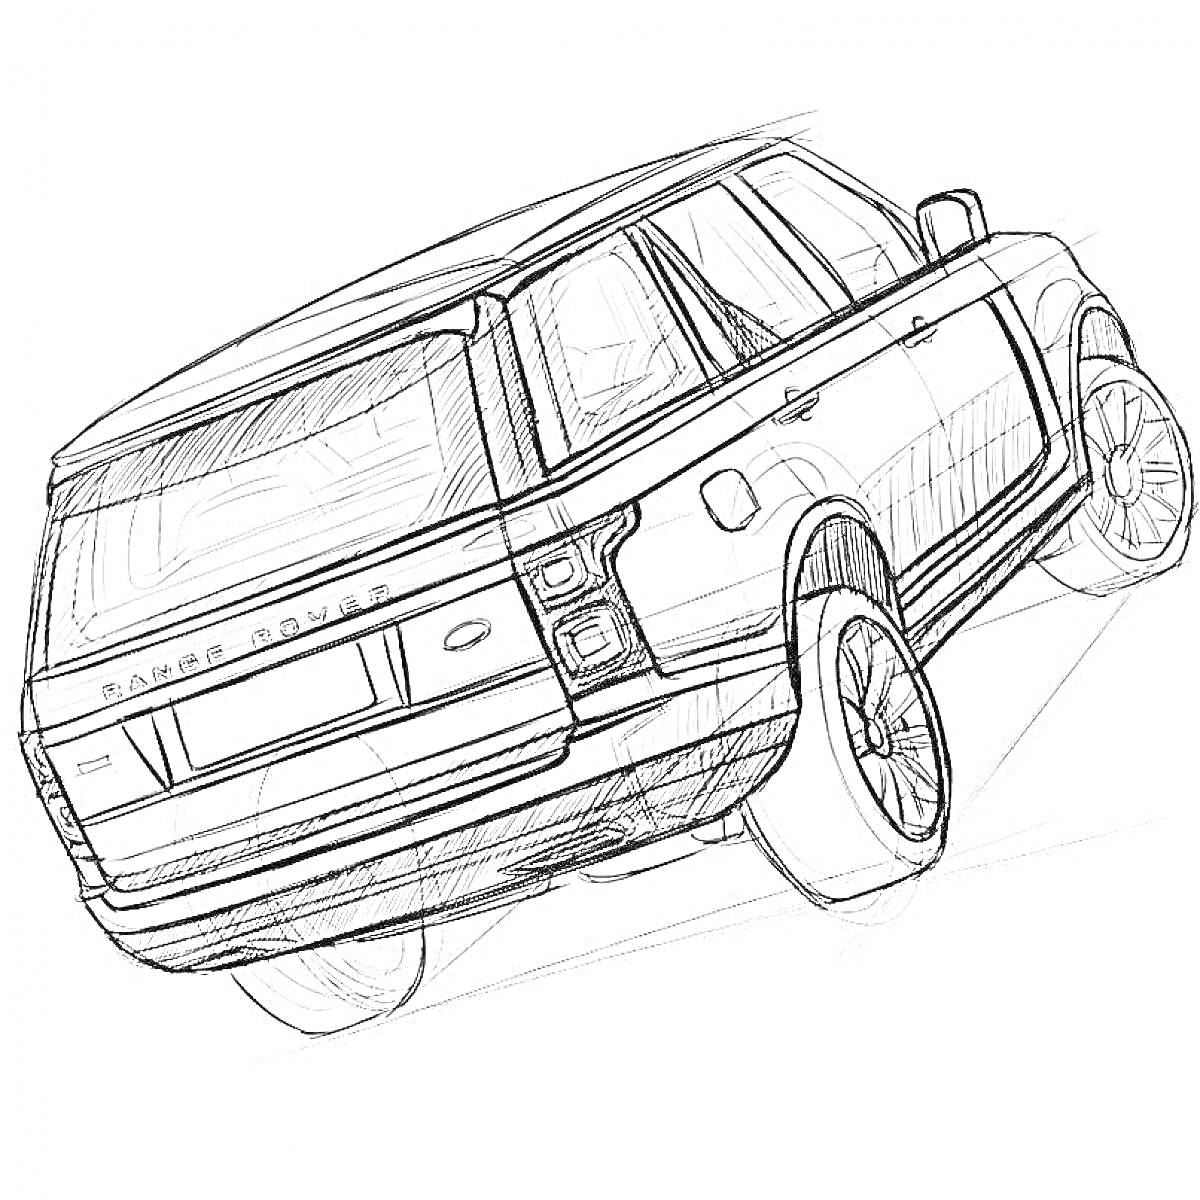 Раскраска Изображение автомобиля Range Rover, вид сзади, с деталями кузова, колесами и логотипом.